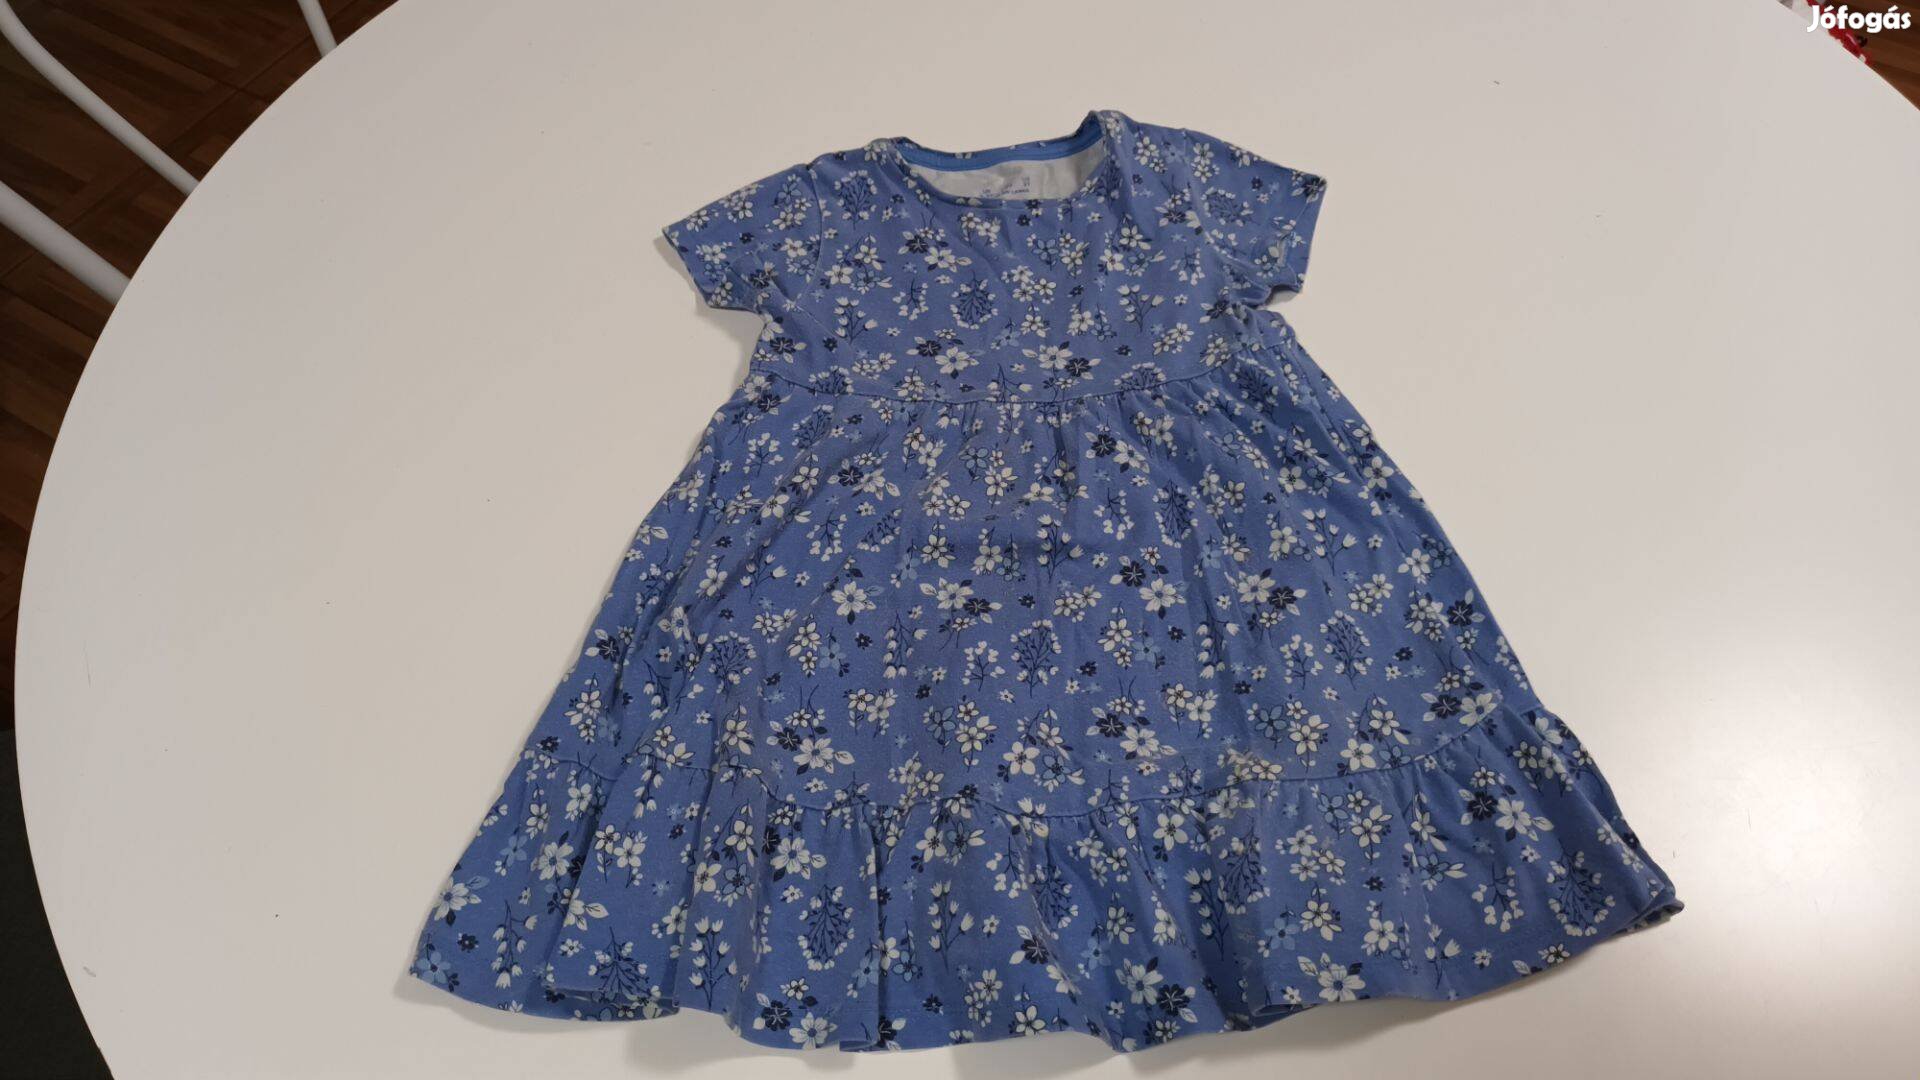 Kék-fehér virág mintás pörgős kislány pamut ruha 98-as